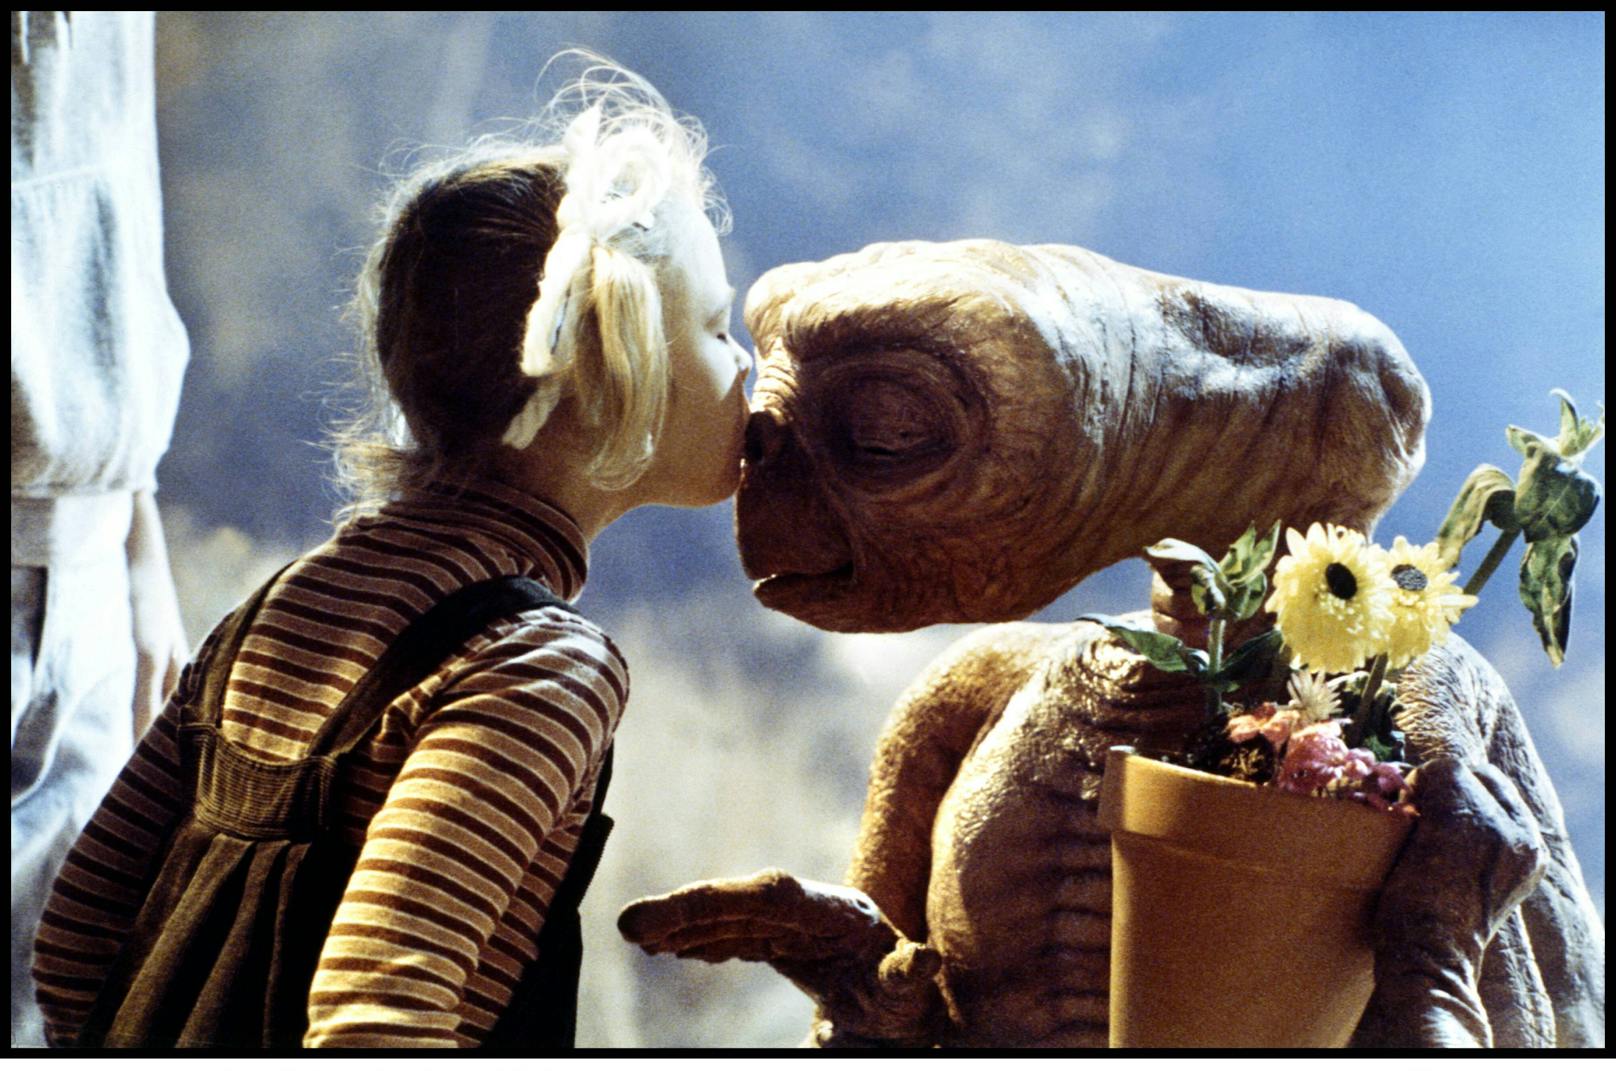 <strong>PLATZ 8: E.T. THE EXTRA-TERRESTRIAL</strong><br>(USA 1982, Regie: Steven Spielberg) <br><br>Und noch einmal Steven Spielberg, der in seinem berührenden Science-Fiction-Märchen "E.T." nicht nur einen putzigen Außerirdischen auf der Erde landen lässt, sondern auch für die berühmteste Radel-Partie der Kinogeschichte sorgt. Als Zugabe gibt's auch noch eine entzückende Drew Barrymore, die dem Titelhelden ihren ersten Filmkuss schenkt. Vier Oscars, darunter für Spezialeffekte und die Filmmusik von John Williams.